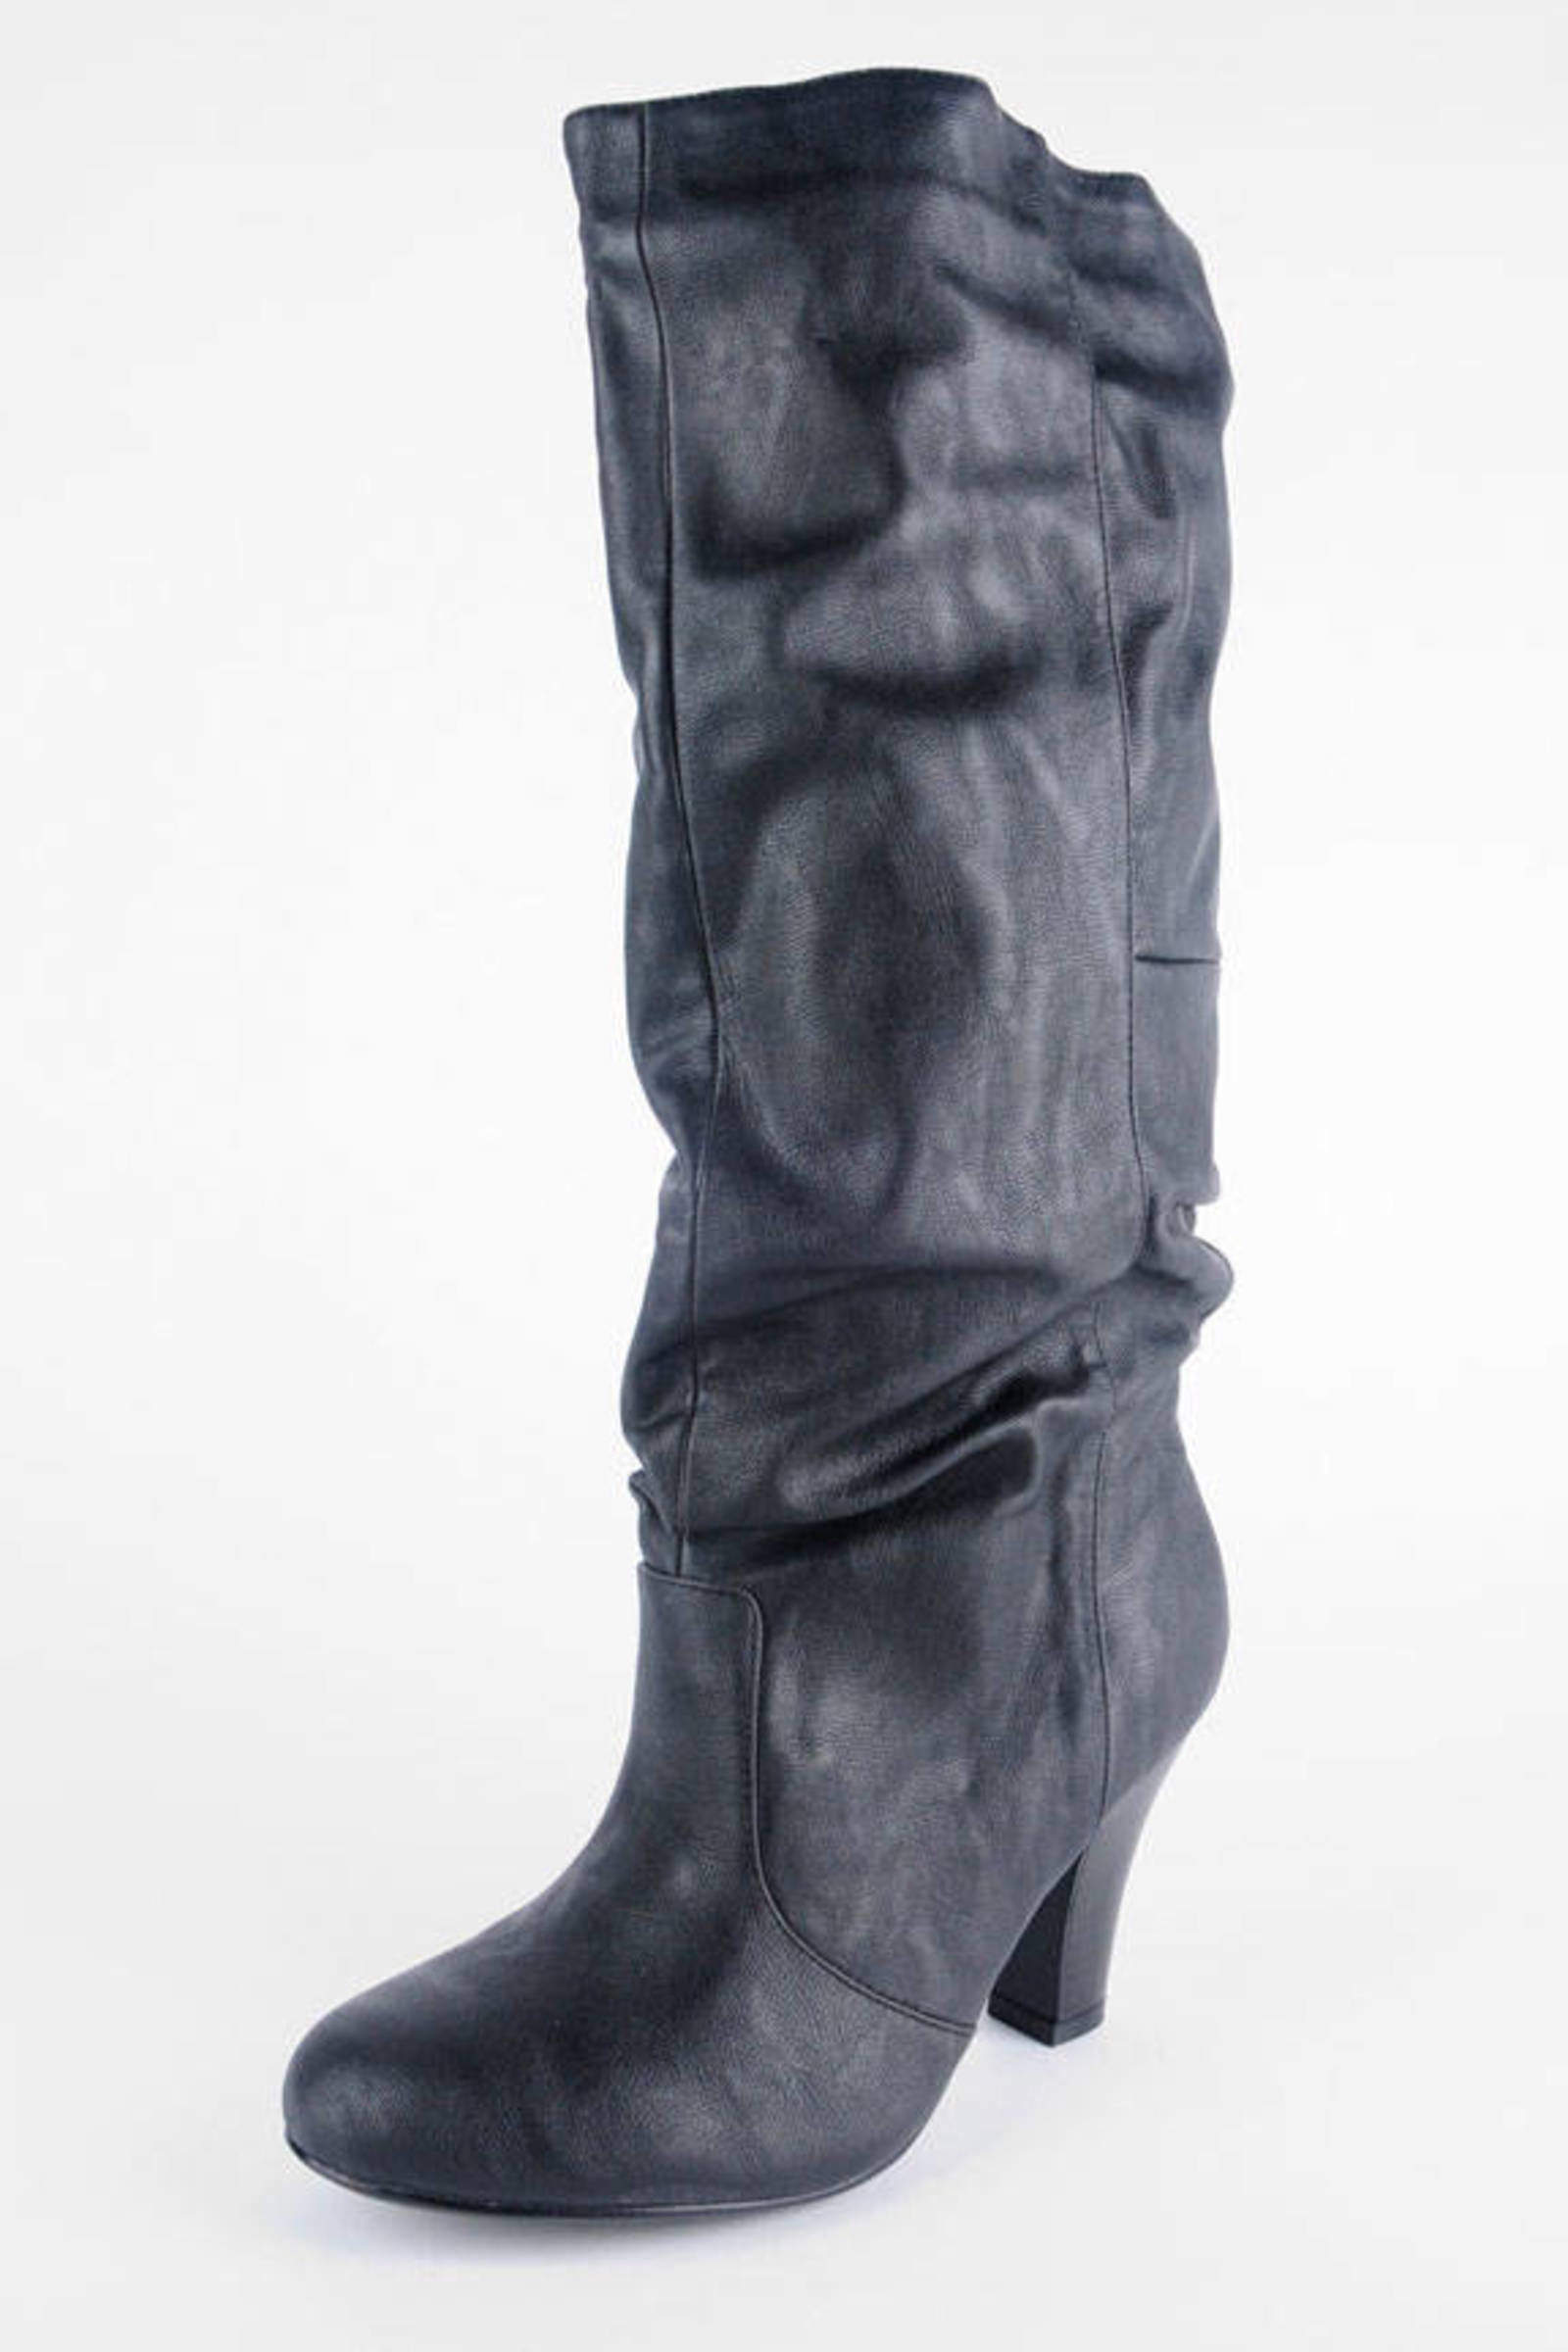 Neiman Boots in Black - $14 | Tobi US